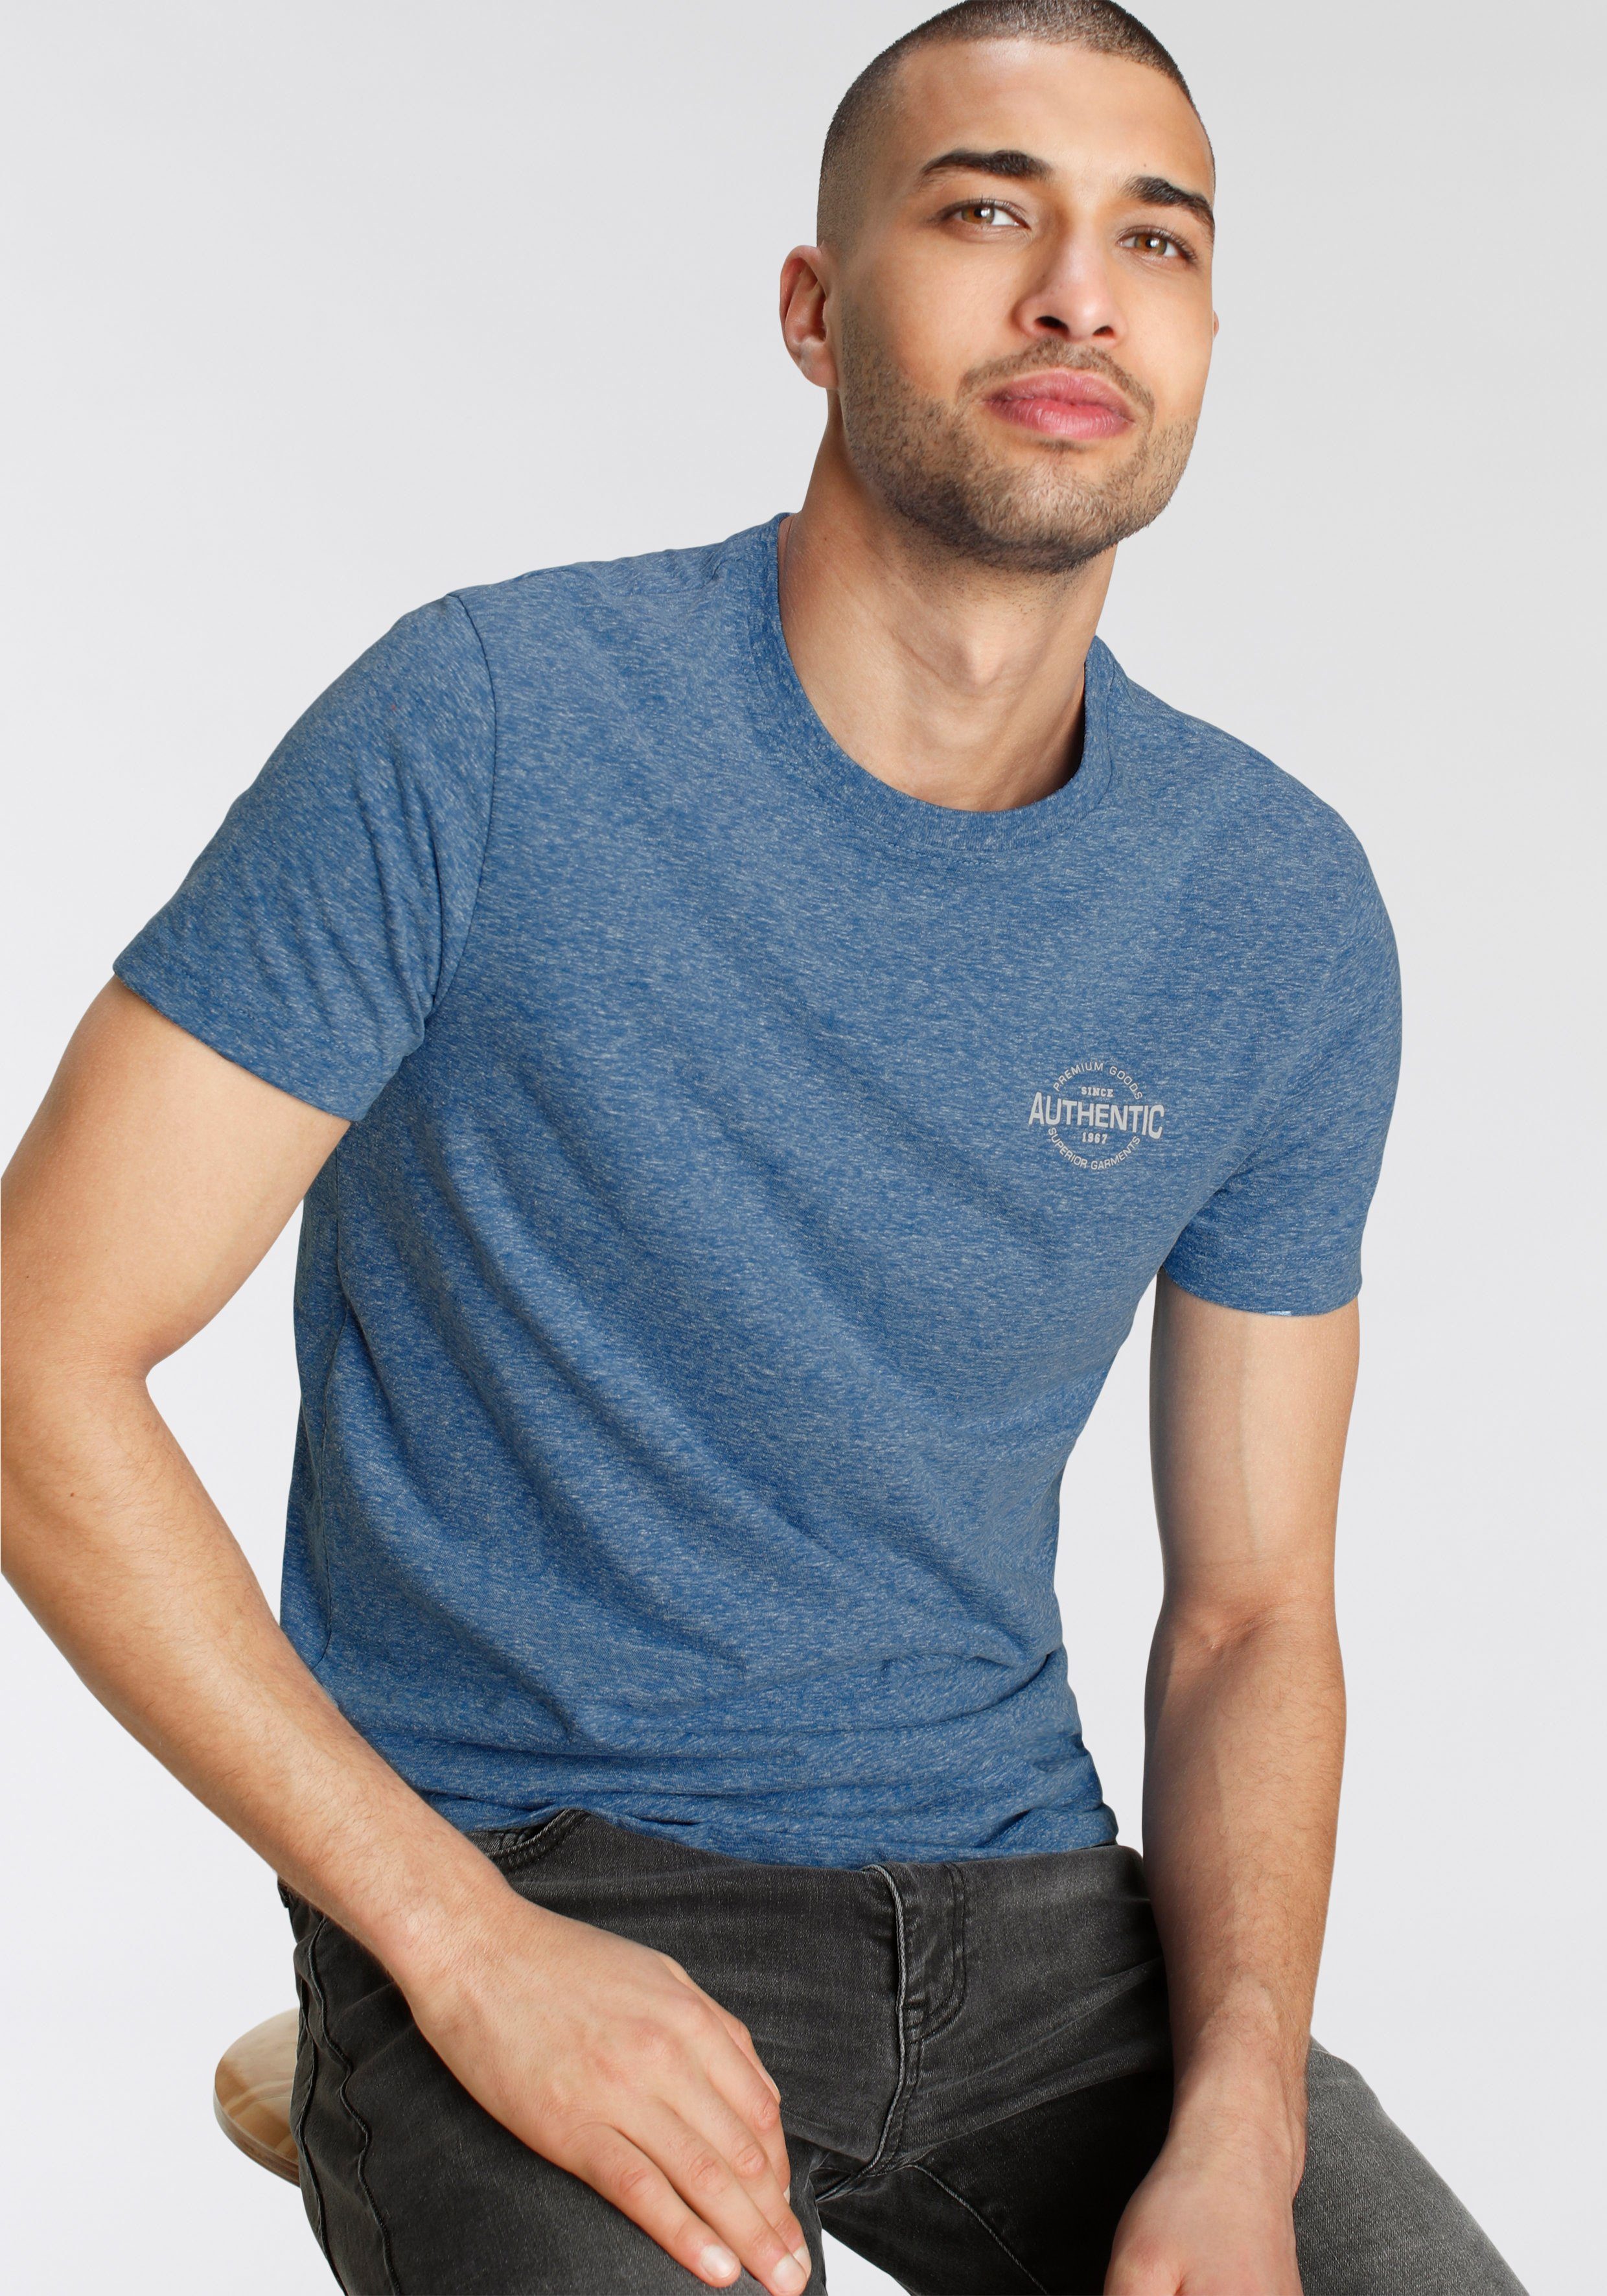 AJC T-Shirt in besonderer Melange blau meliert Optik Print mit Logo und